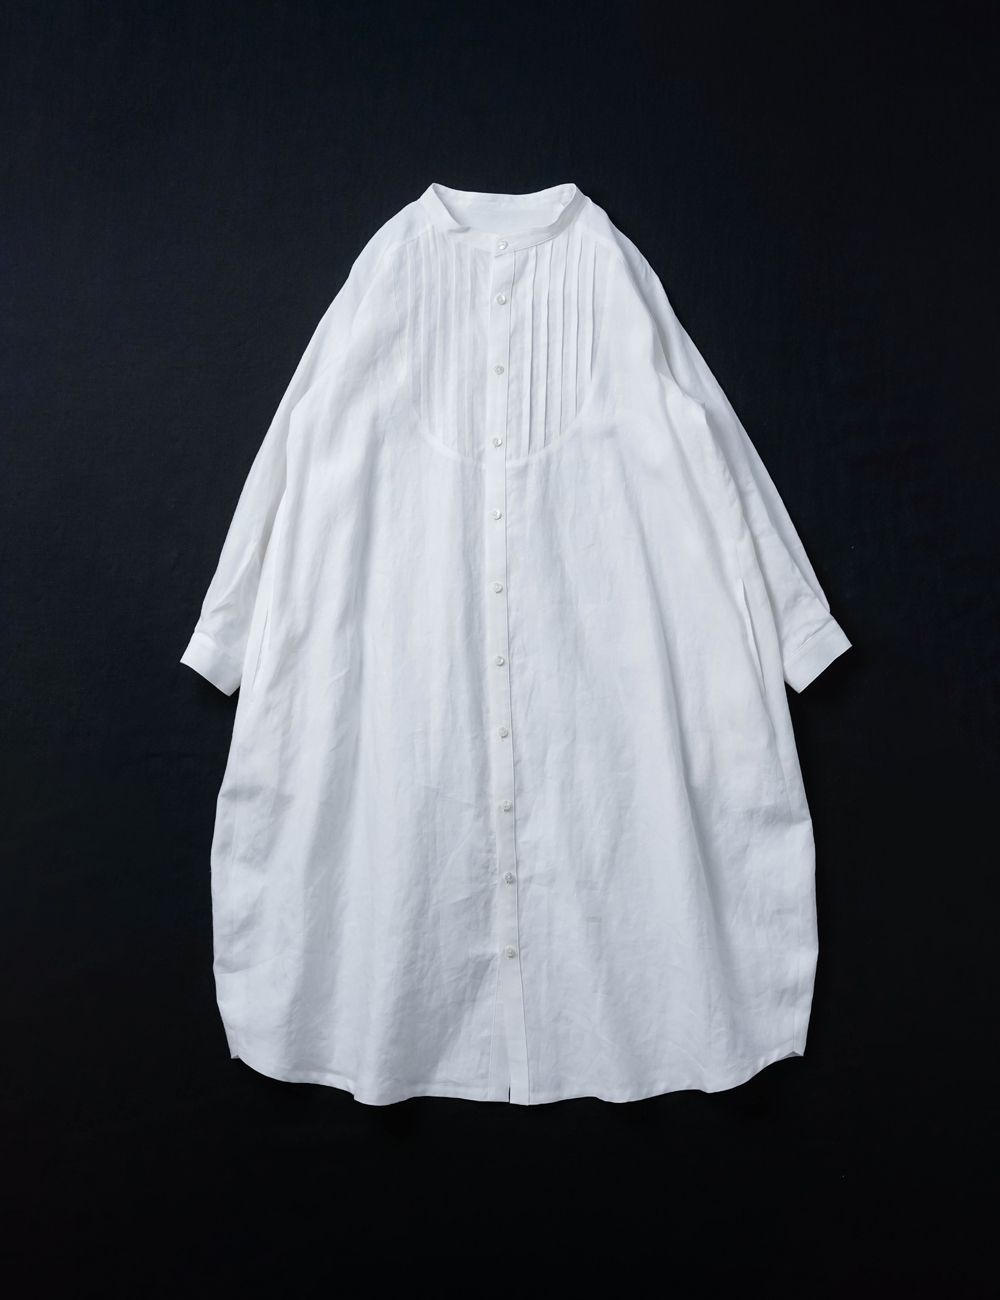 【リネンワンピース】 見惚れるプザムコクーンドレス 超高密度リネン/ 白色 a082b-wht1